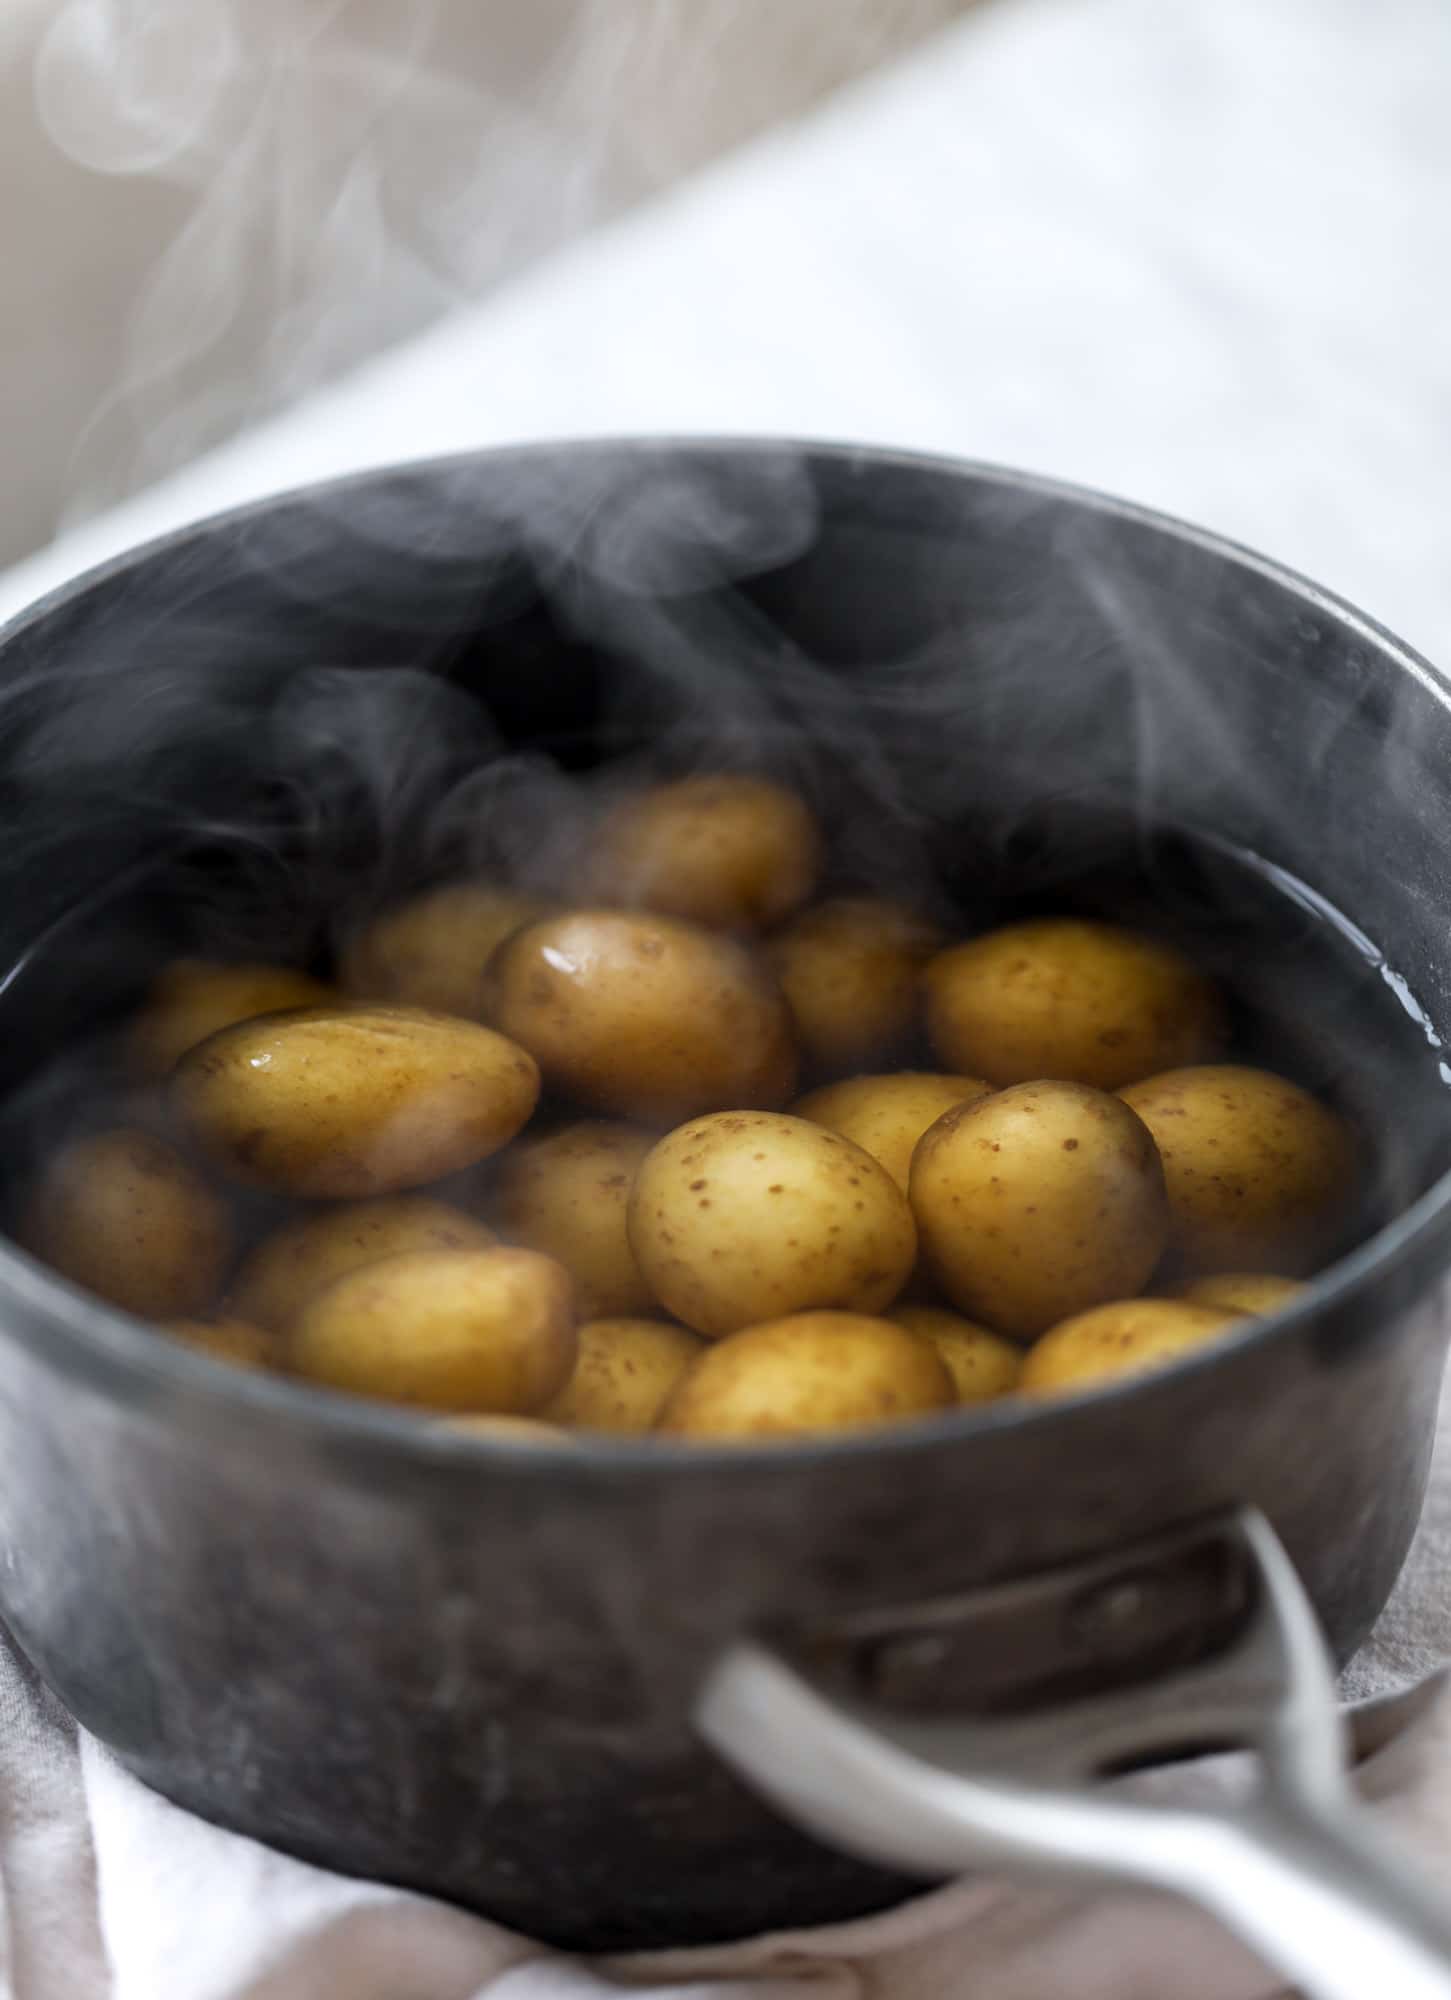 par boiling potatoes